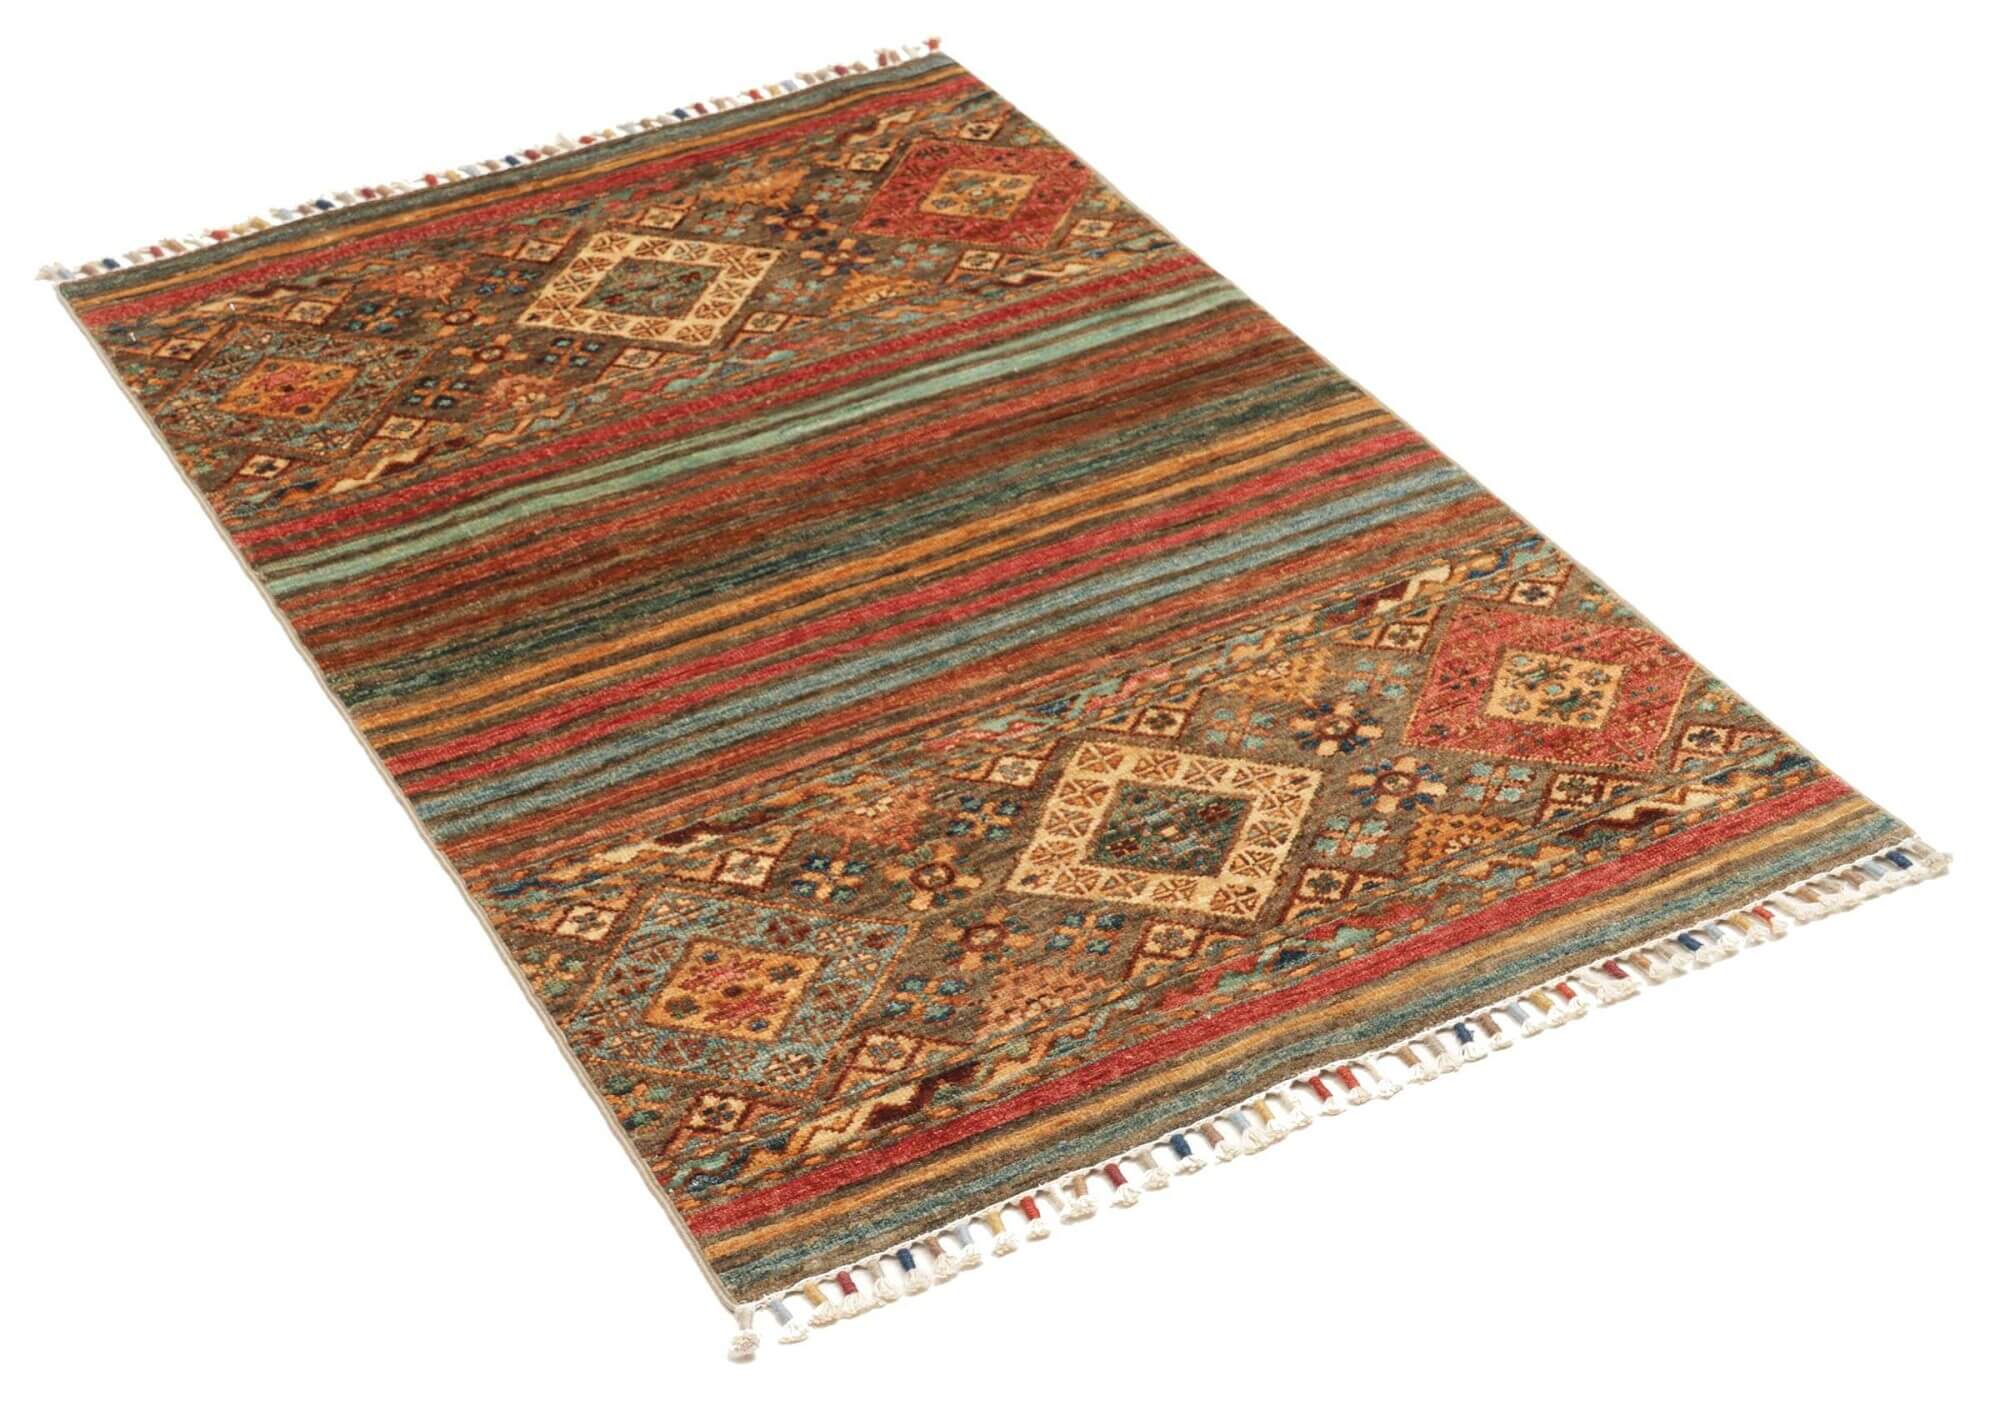 Afghan-Teppich Rubin small, handgeknüpft aus Schurwolle, 079 x 124 cm, mehrfarbig, Schrägansicht